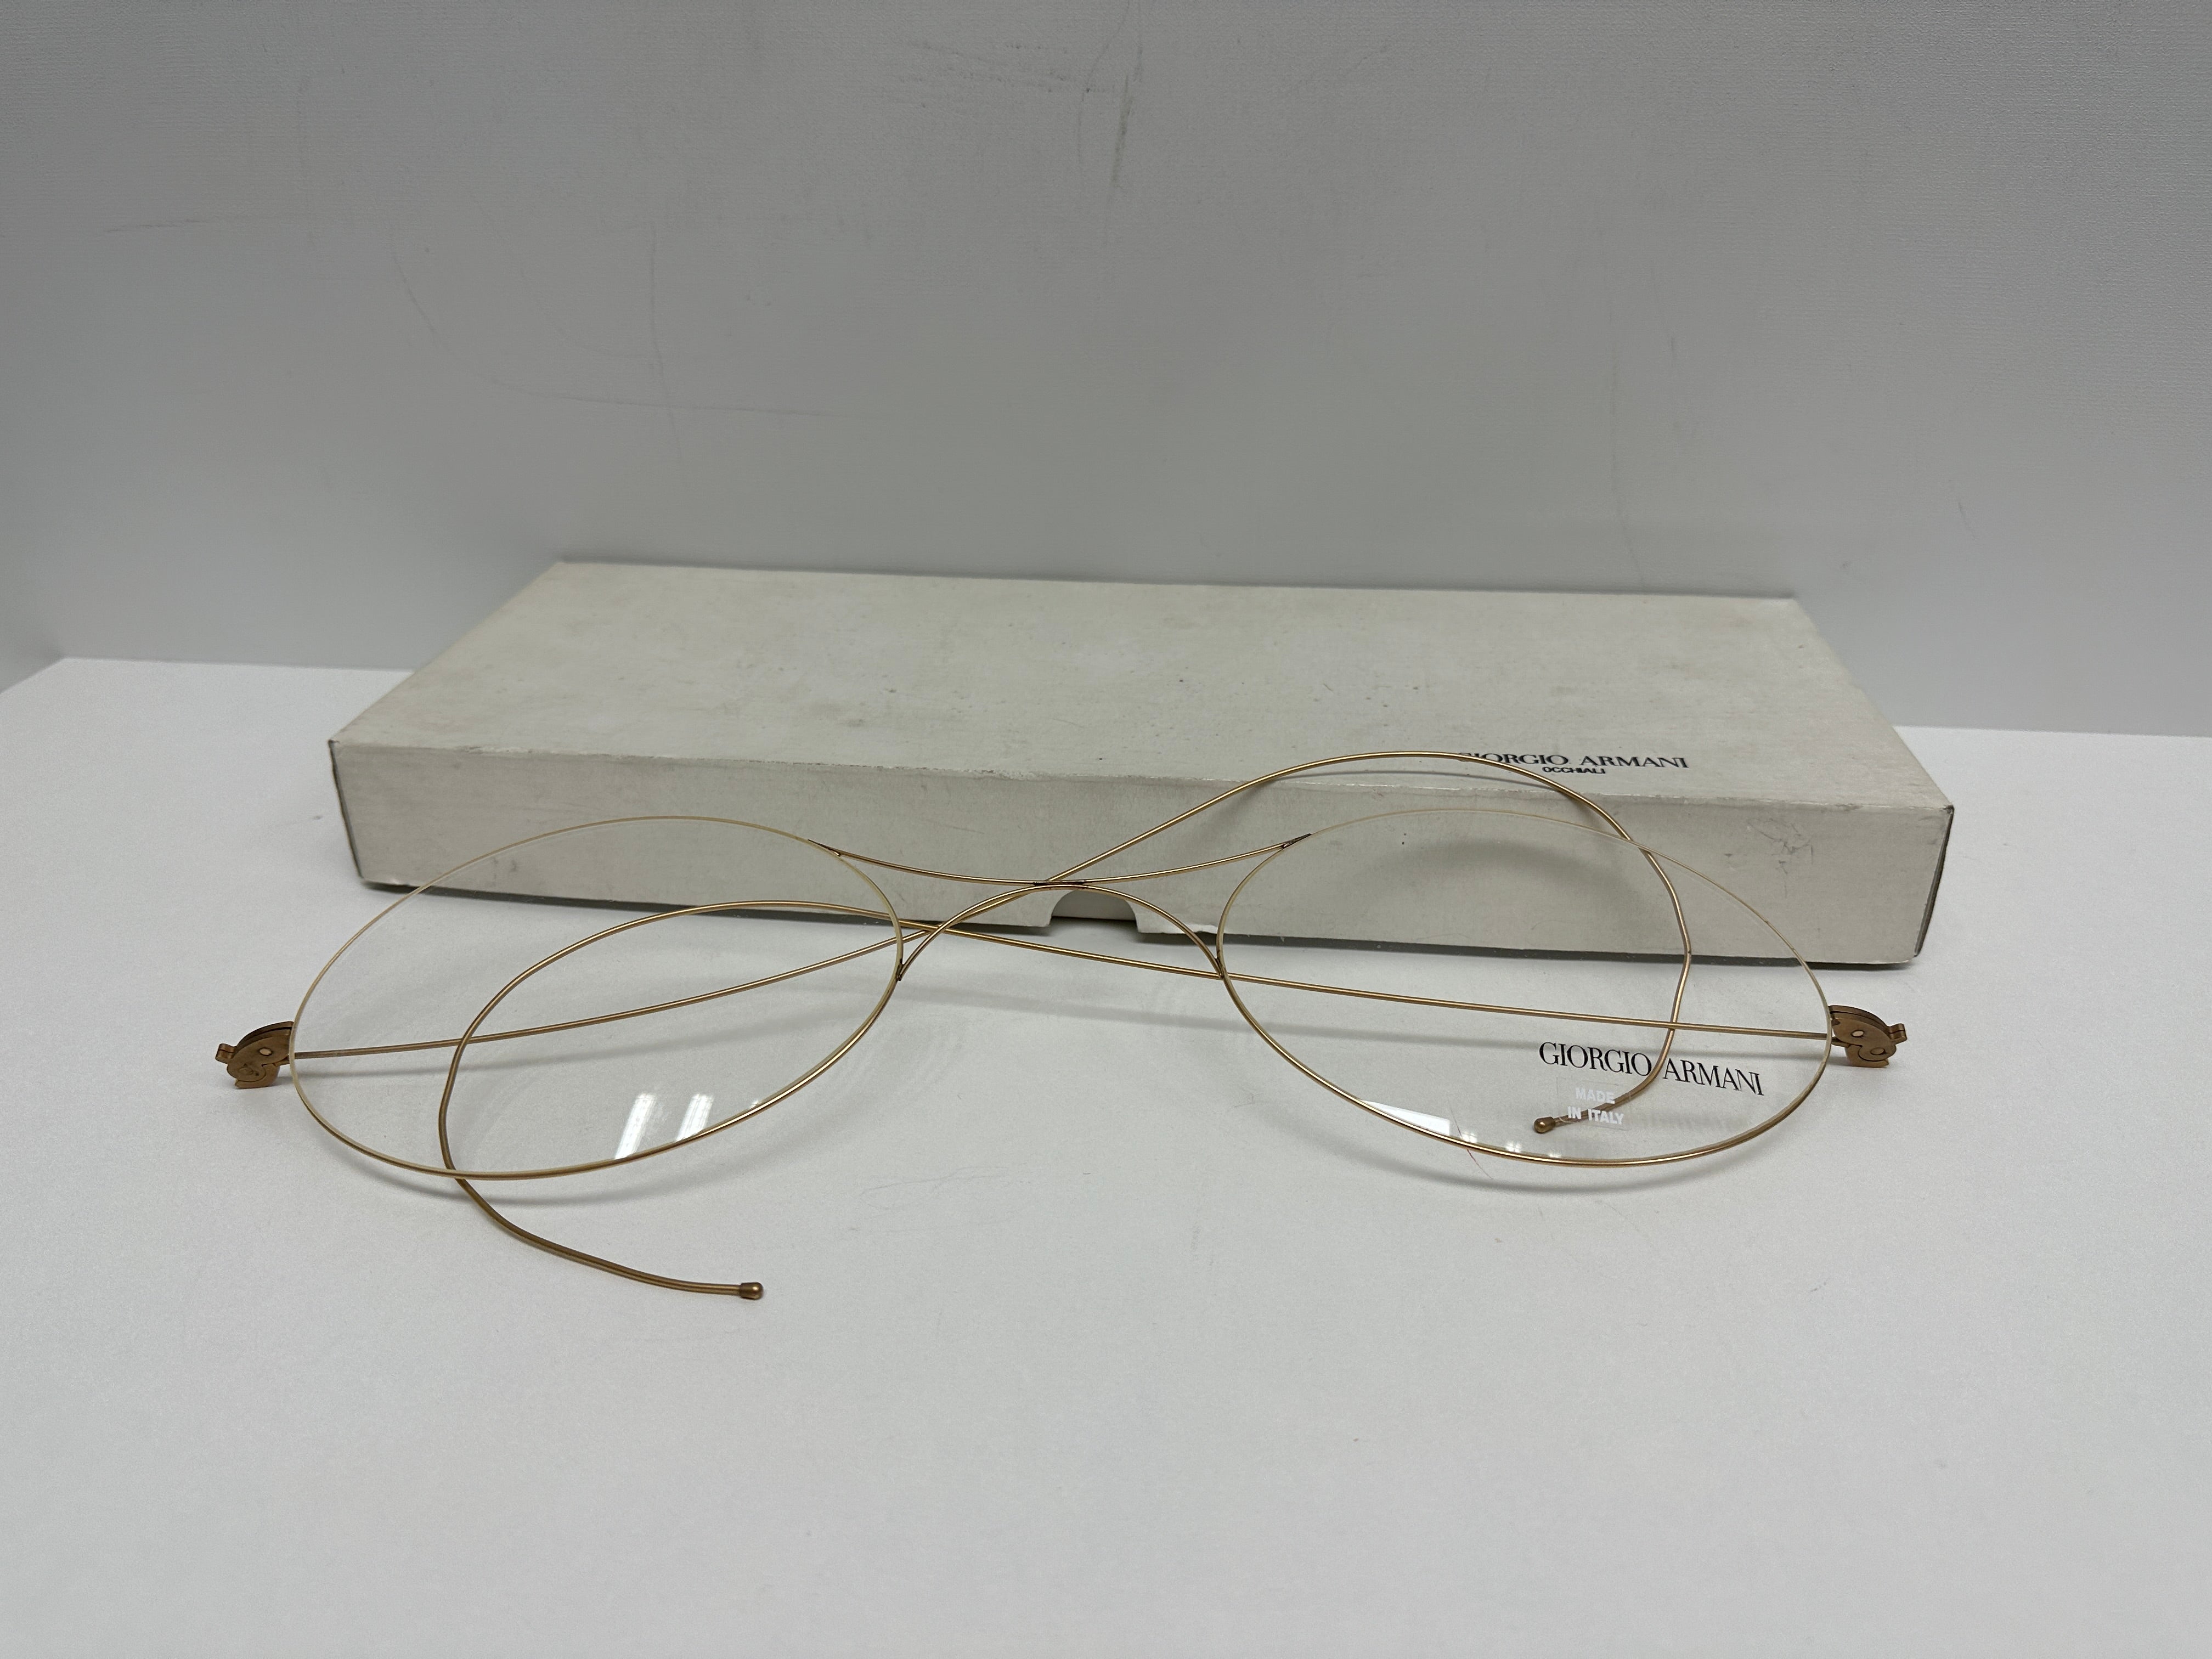 Dies ist ein seltener und einzigartiger Artikel! Die Armani-Brille Factic für die Auslage im Geschäft wird in der Originalverpackung aus Karton geliefert und ist aus Metall und Glas gefertigt. Sie ist ein begehrtes Sammlerstück und eine großartige